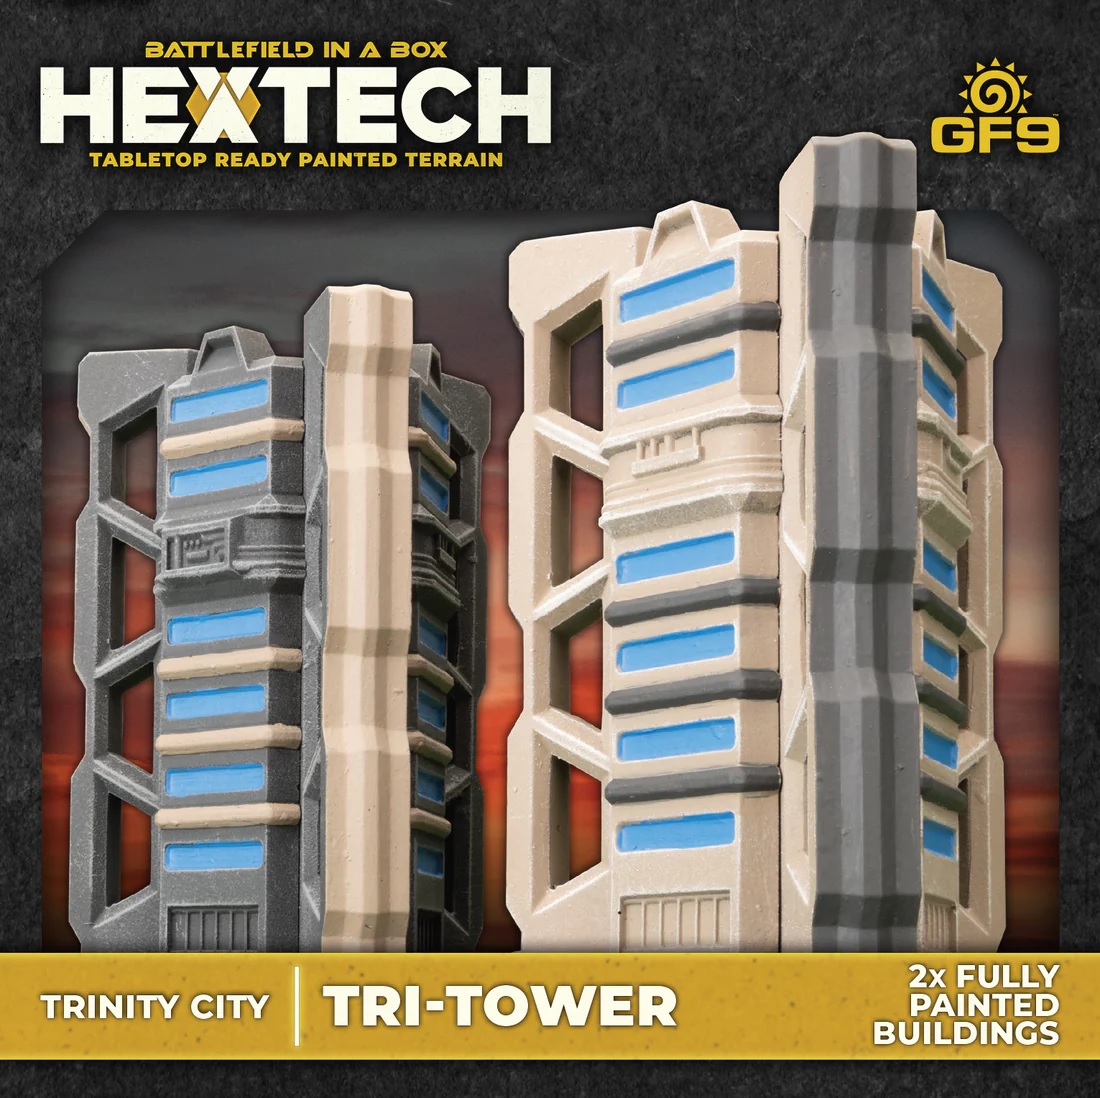 Battlefield in a Box: Hextech: Tri-Tower 